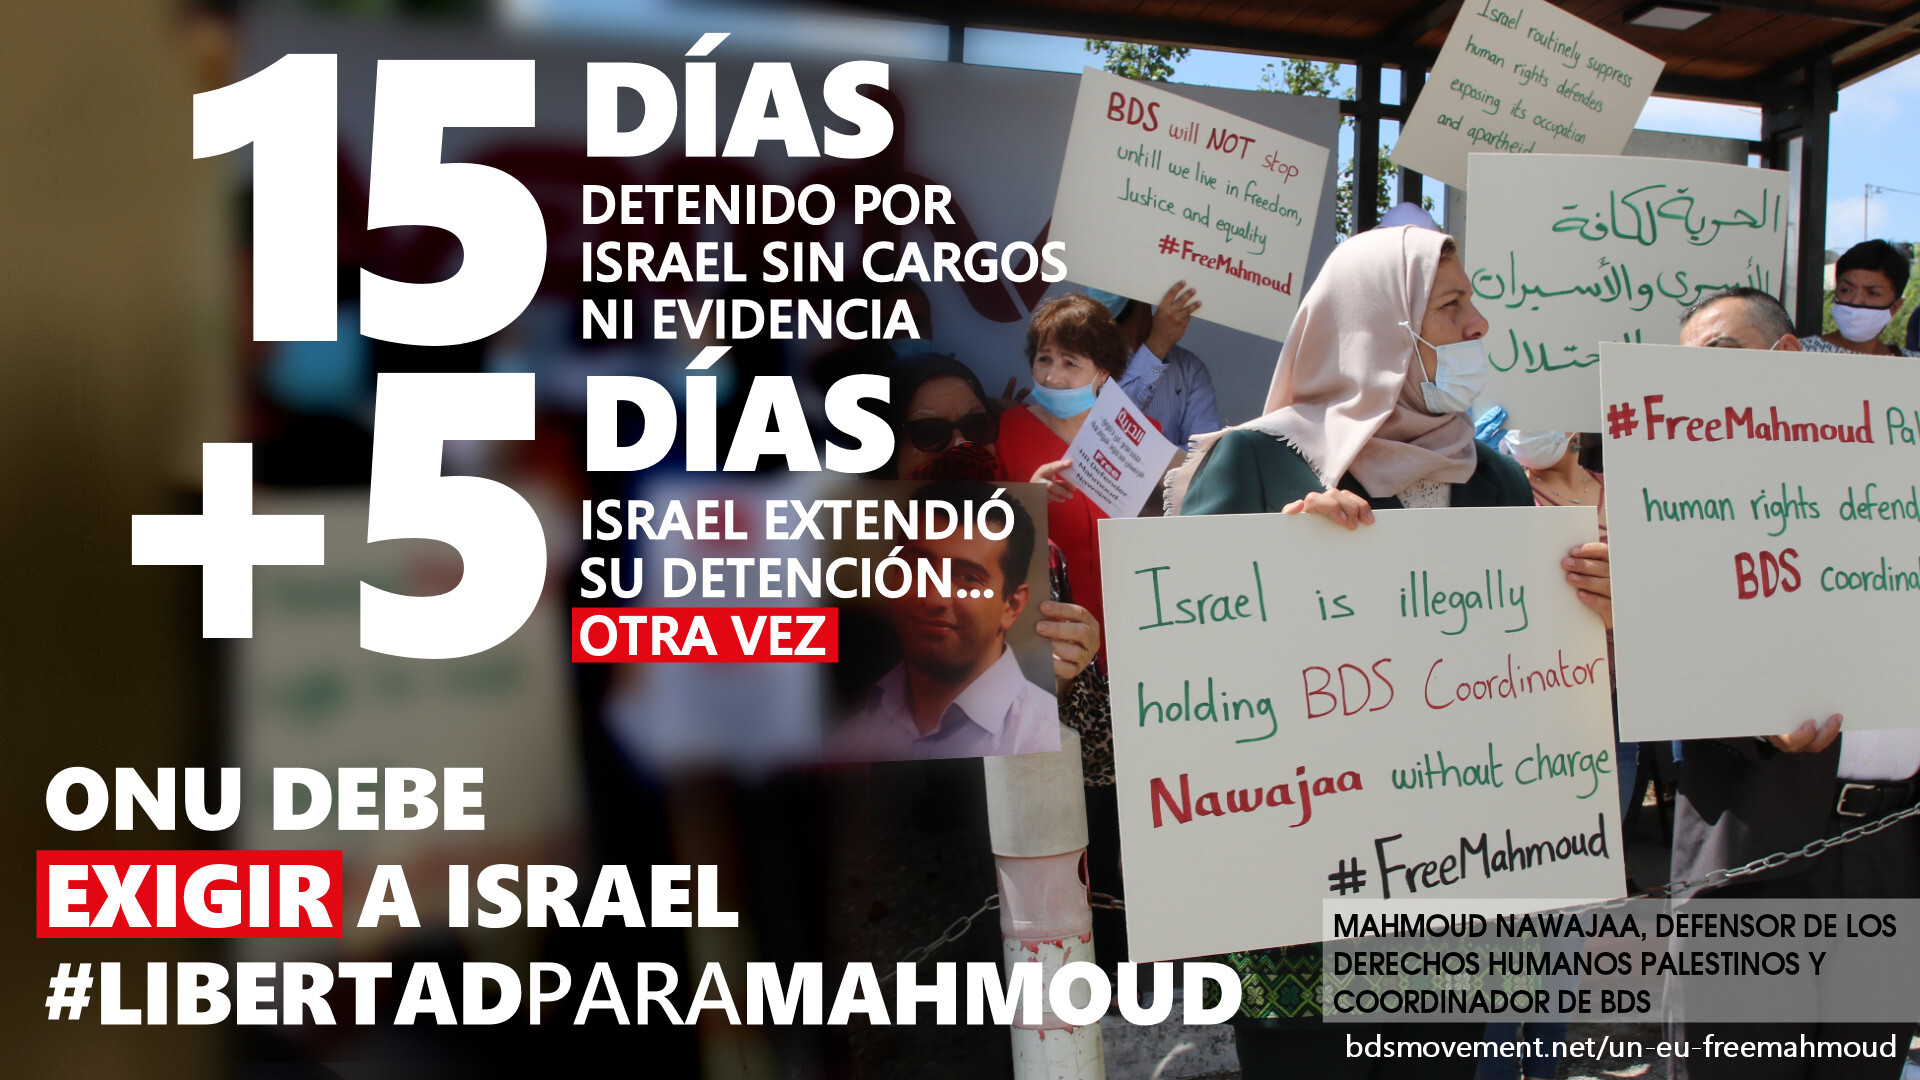  #LibertadParaMahmoud: corte militar israelí extiende la detención de Mahmoud Nawajaa por 5 días más.